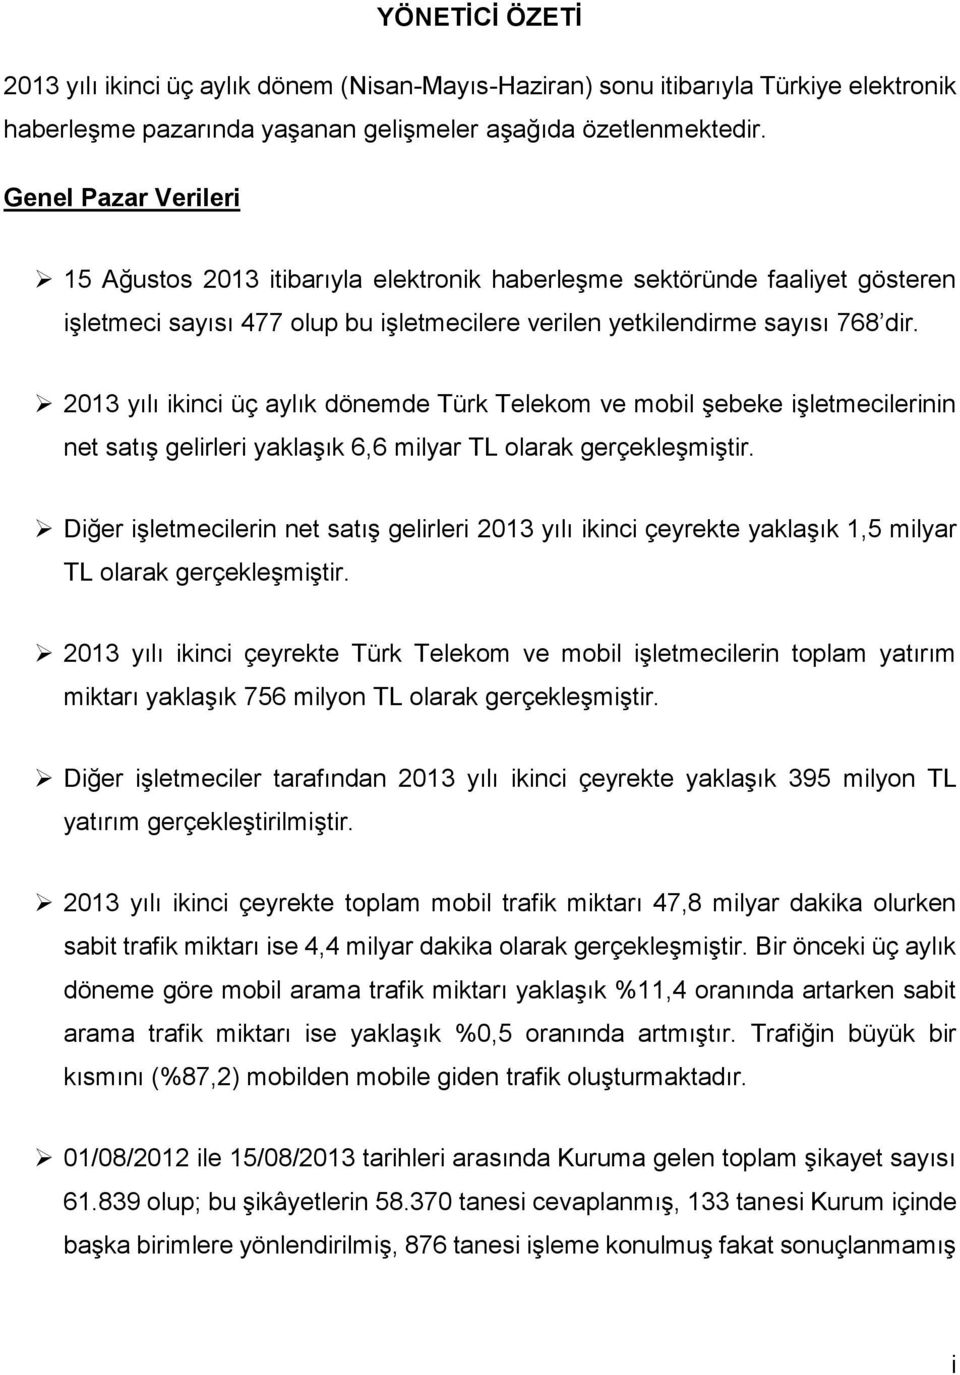 213 yılı ikinci üç aylık dönemde Türk Telekom ve mobil şebeke işletmecilerinin net satış gelirleri yaklaşık 6,6 milyar TL olarak gerçekleşmiştir.